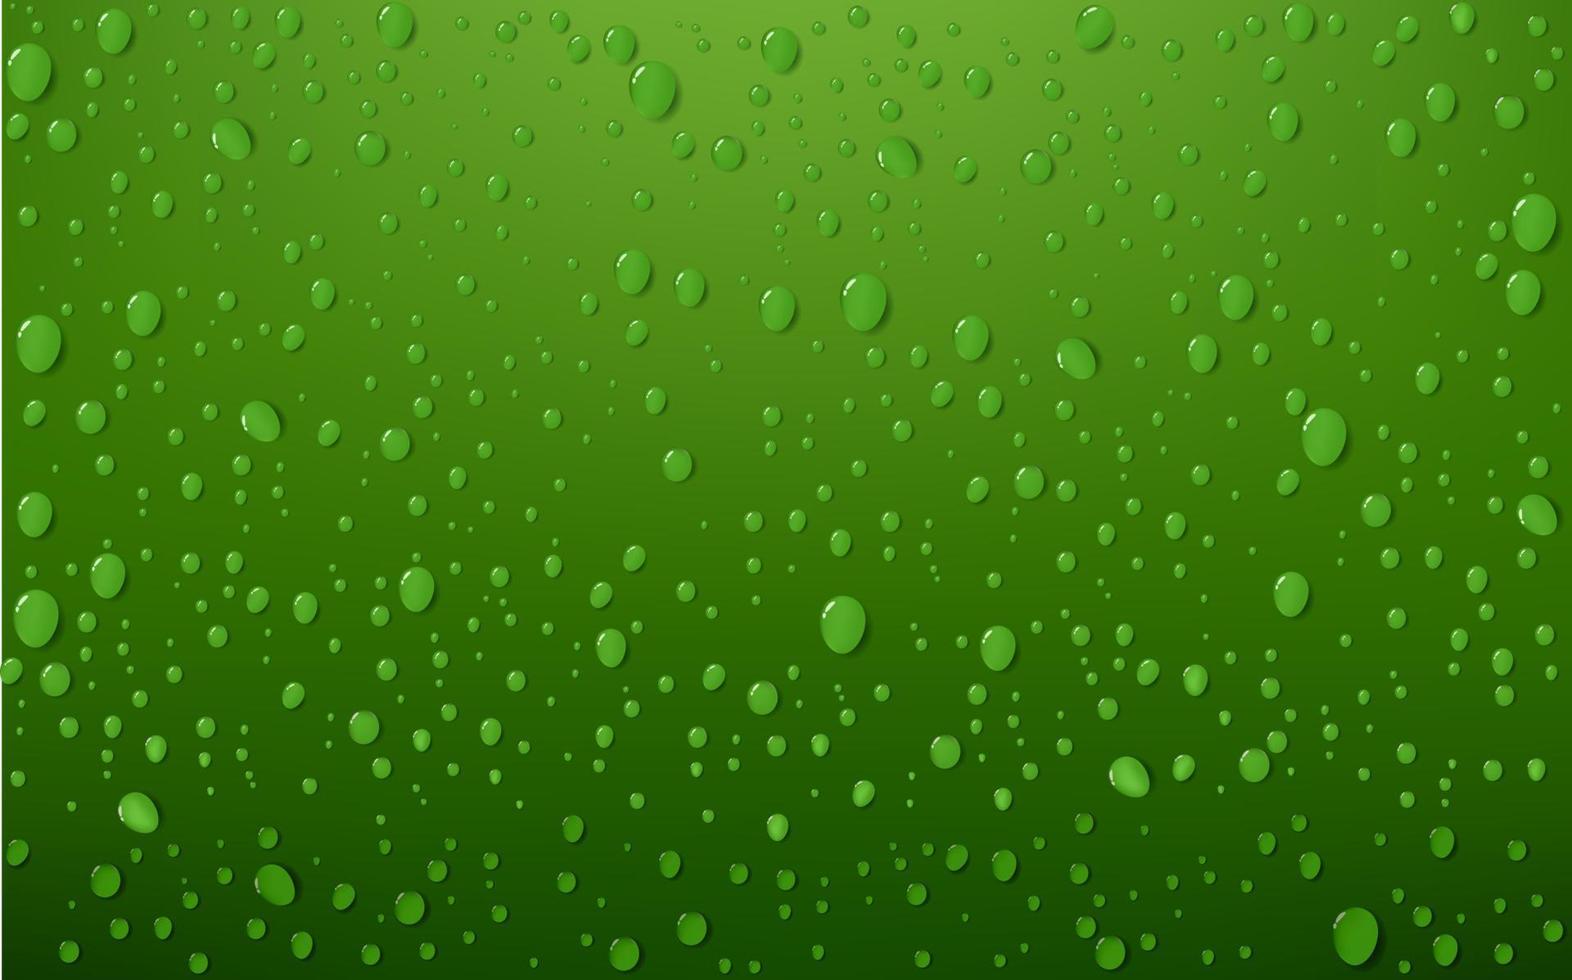 vatten släppa på grön bakgrund, vektor illustration